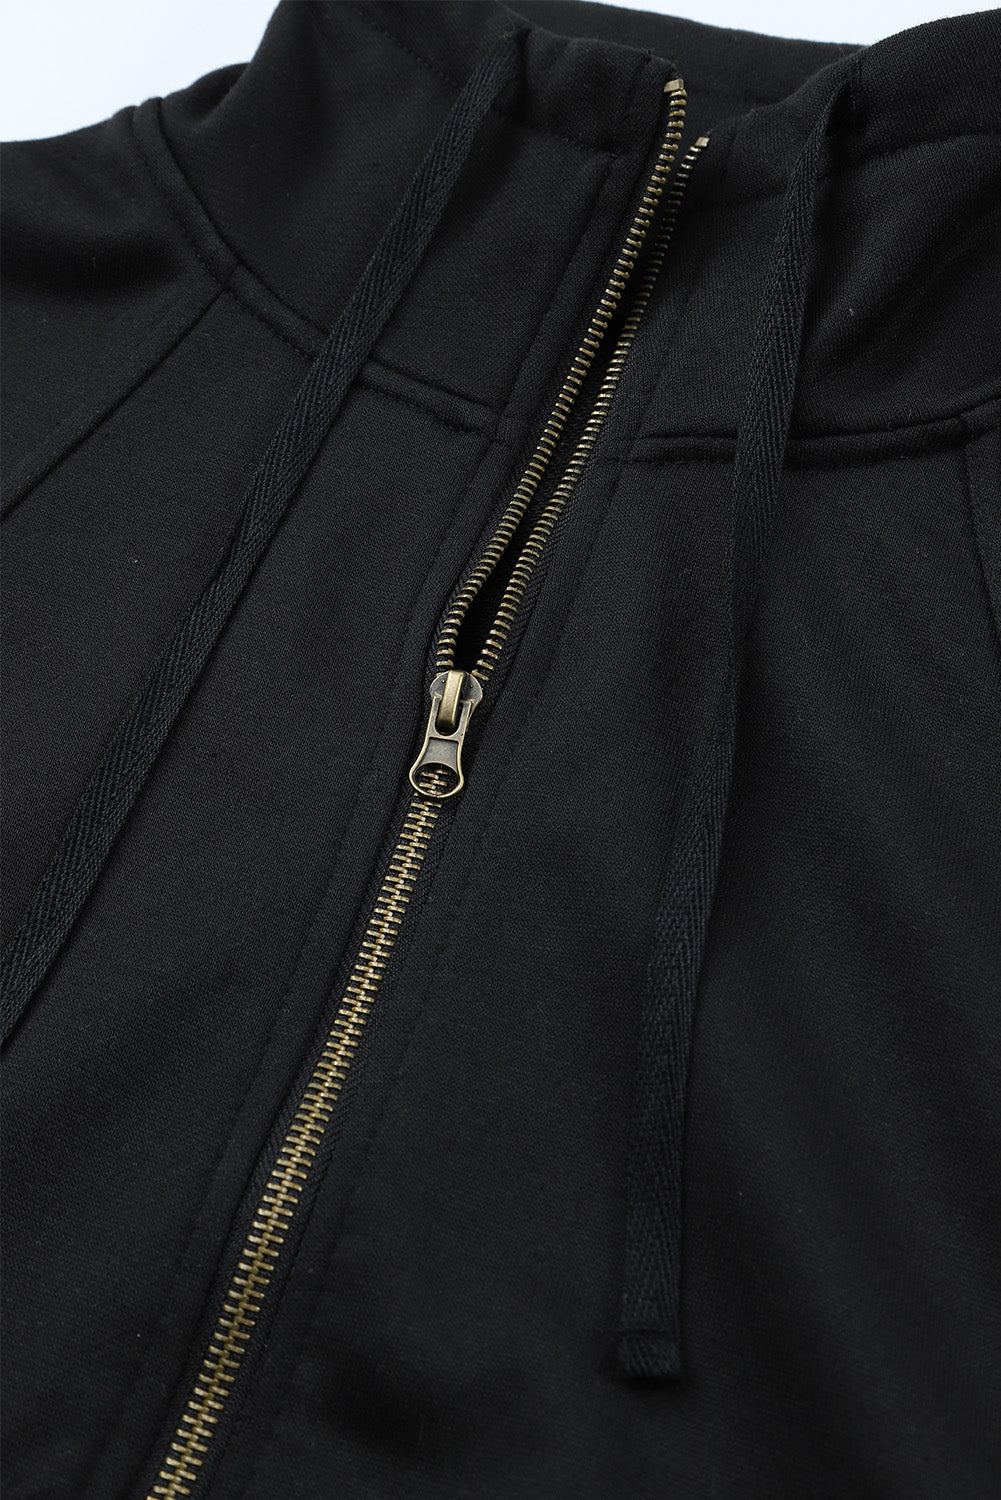 Baumwoll-Sweatshirt mit halbem Reißverschluss und Taschen in Himmelblau